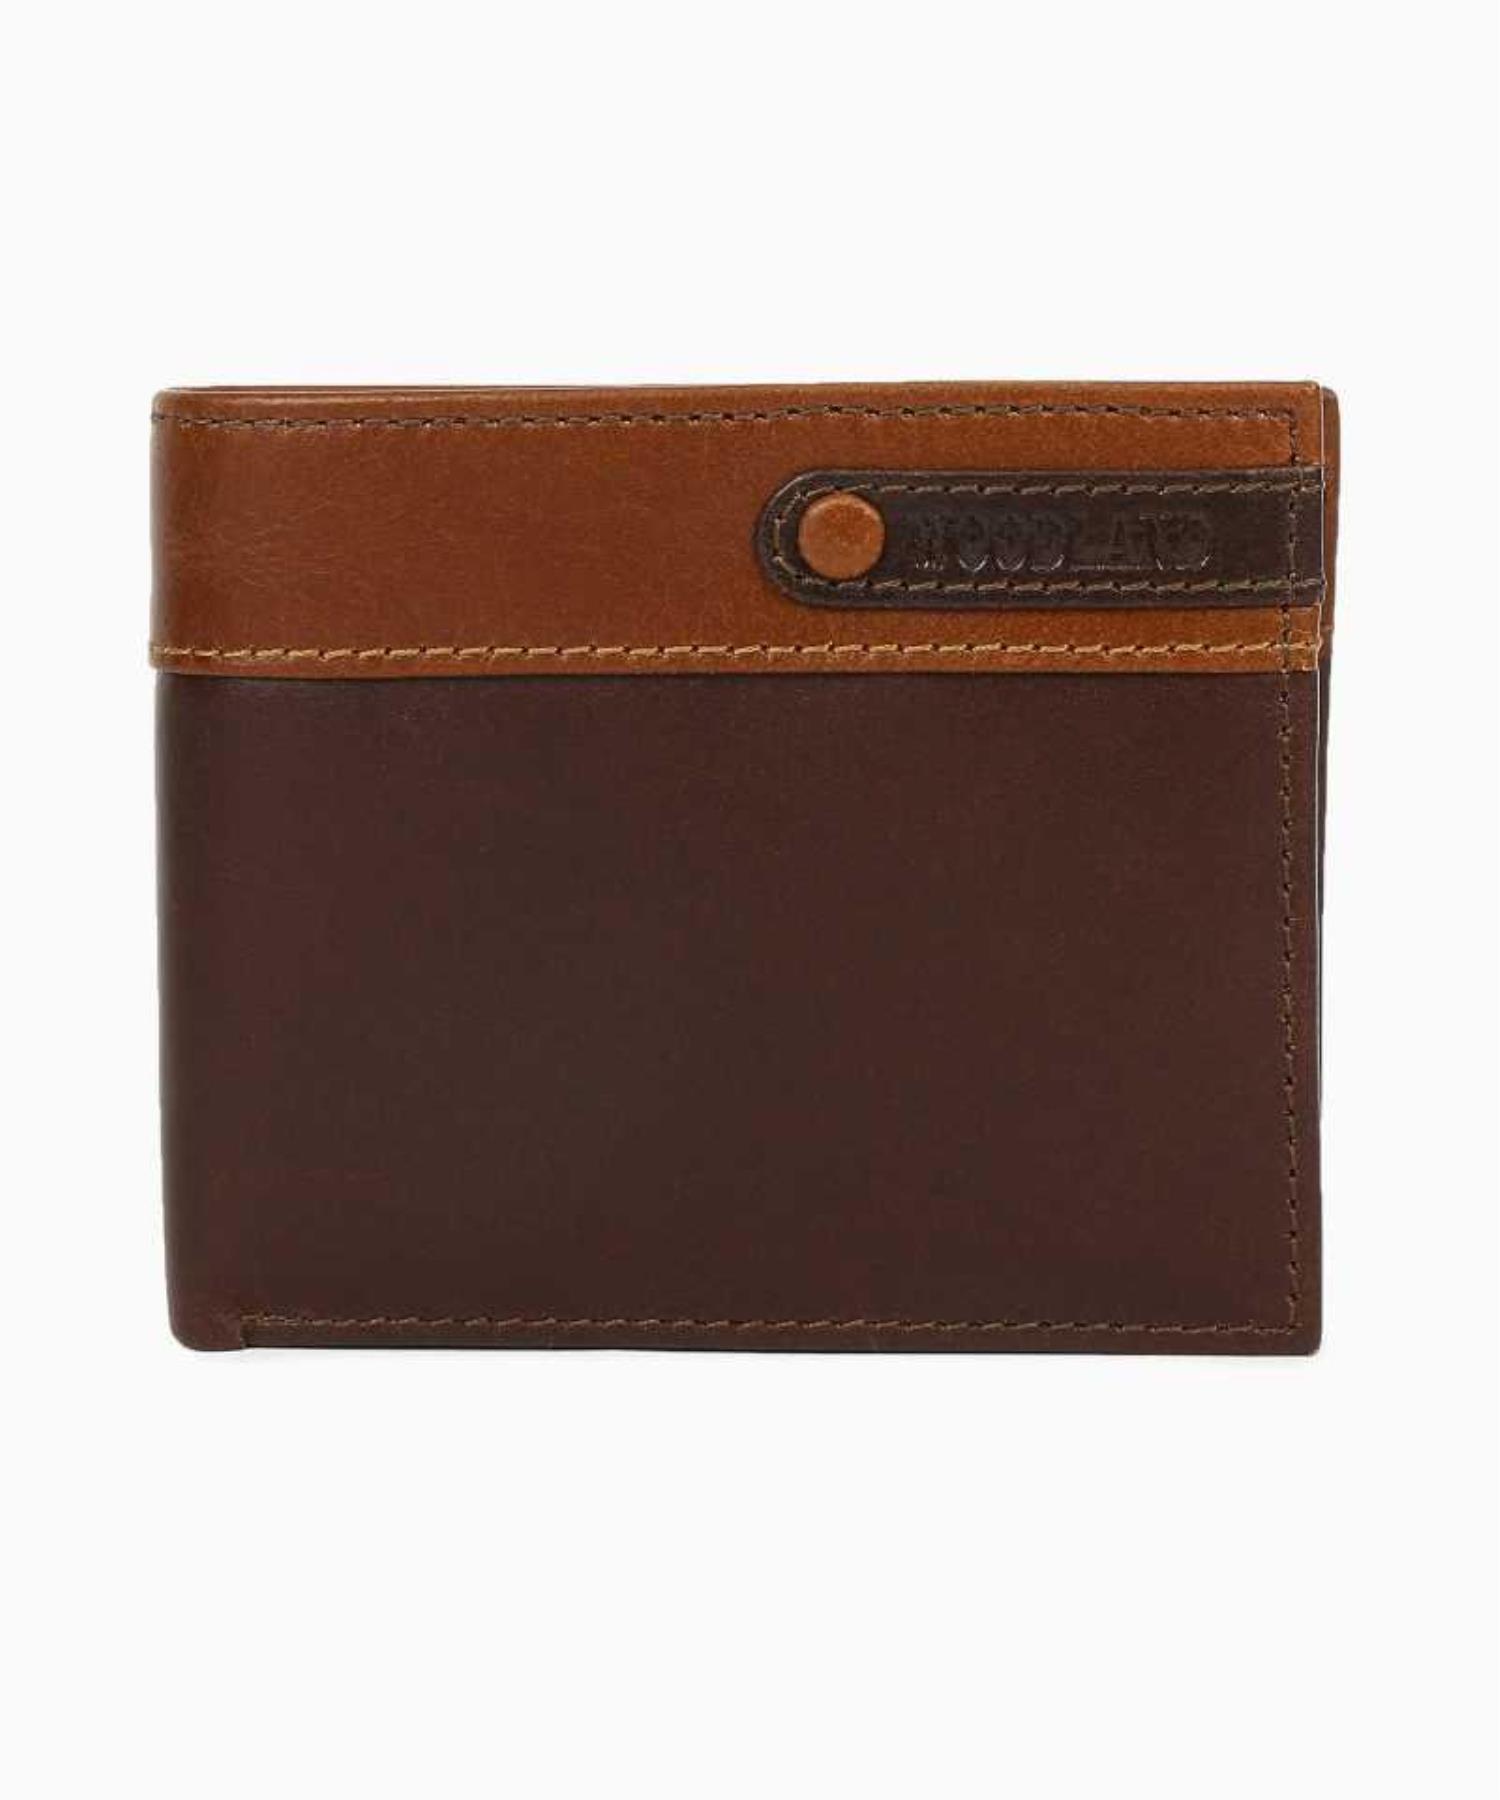 wallet for men wallet men leather wallet wallet mens wallet wallet wallet  best wallets for men leather wallet for men money clip wallet credit